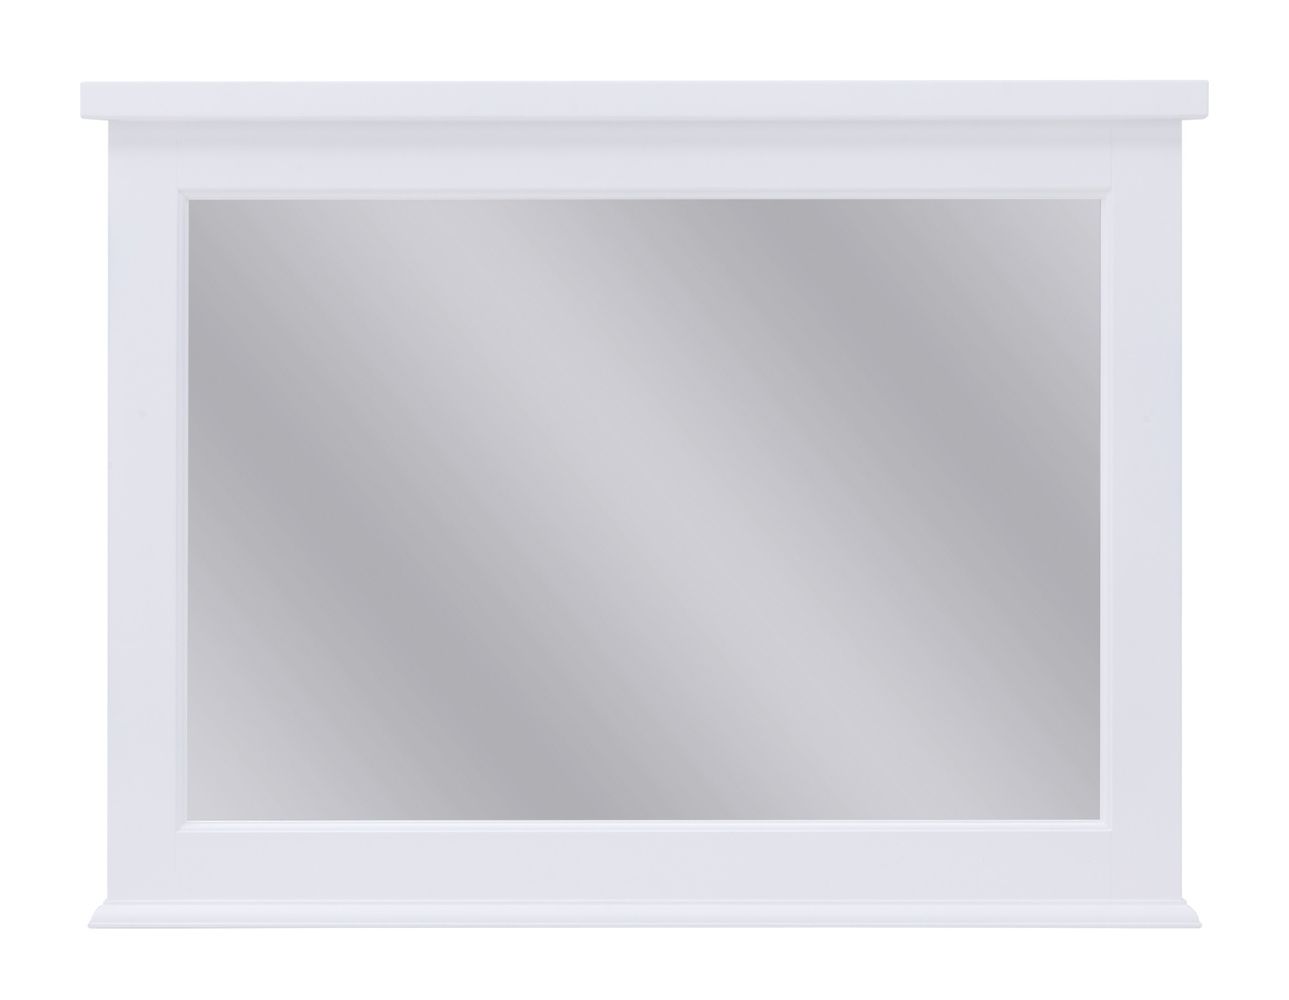 Historicus Oorzaak zoete smaak Spiegel Rasina 33, kleur: wit - Afmetingen: 73 x 98 x 5 cm (h x b x d)